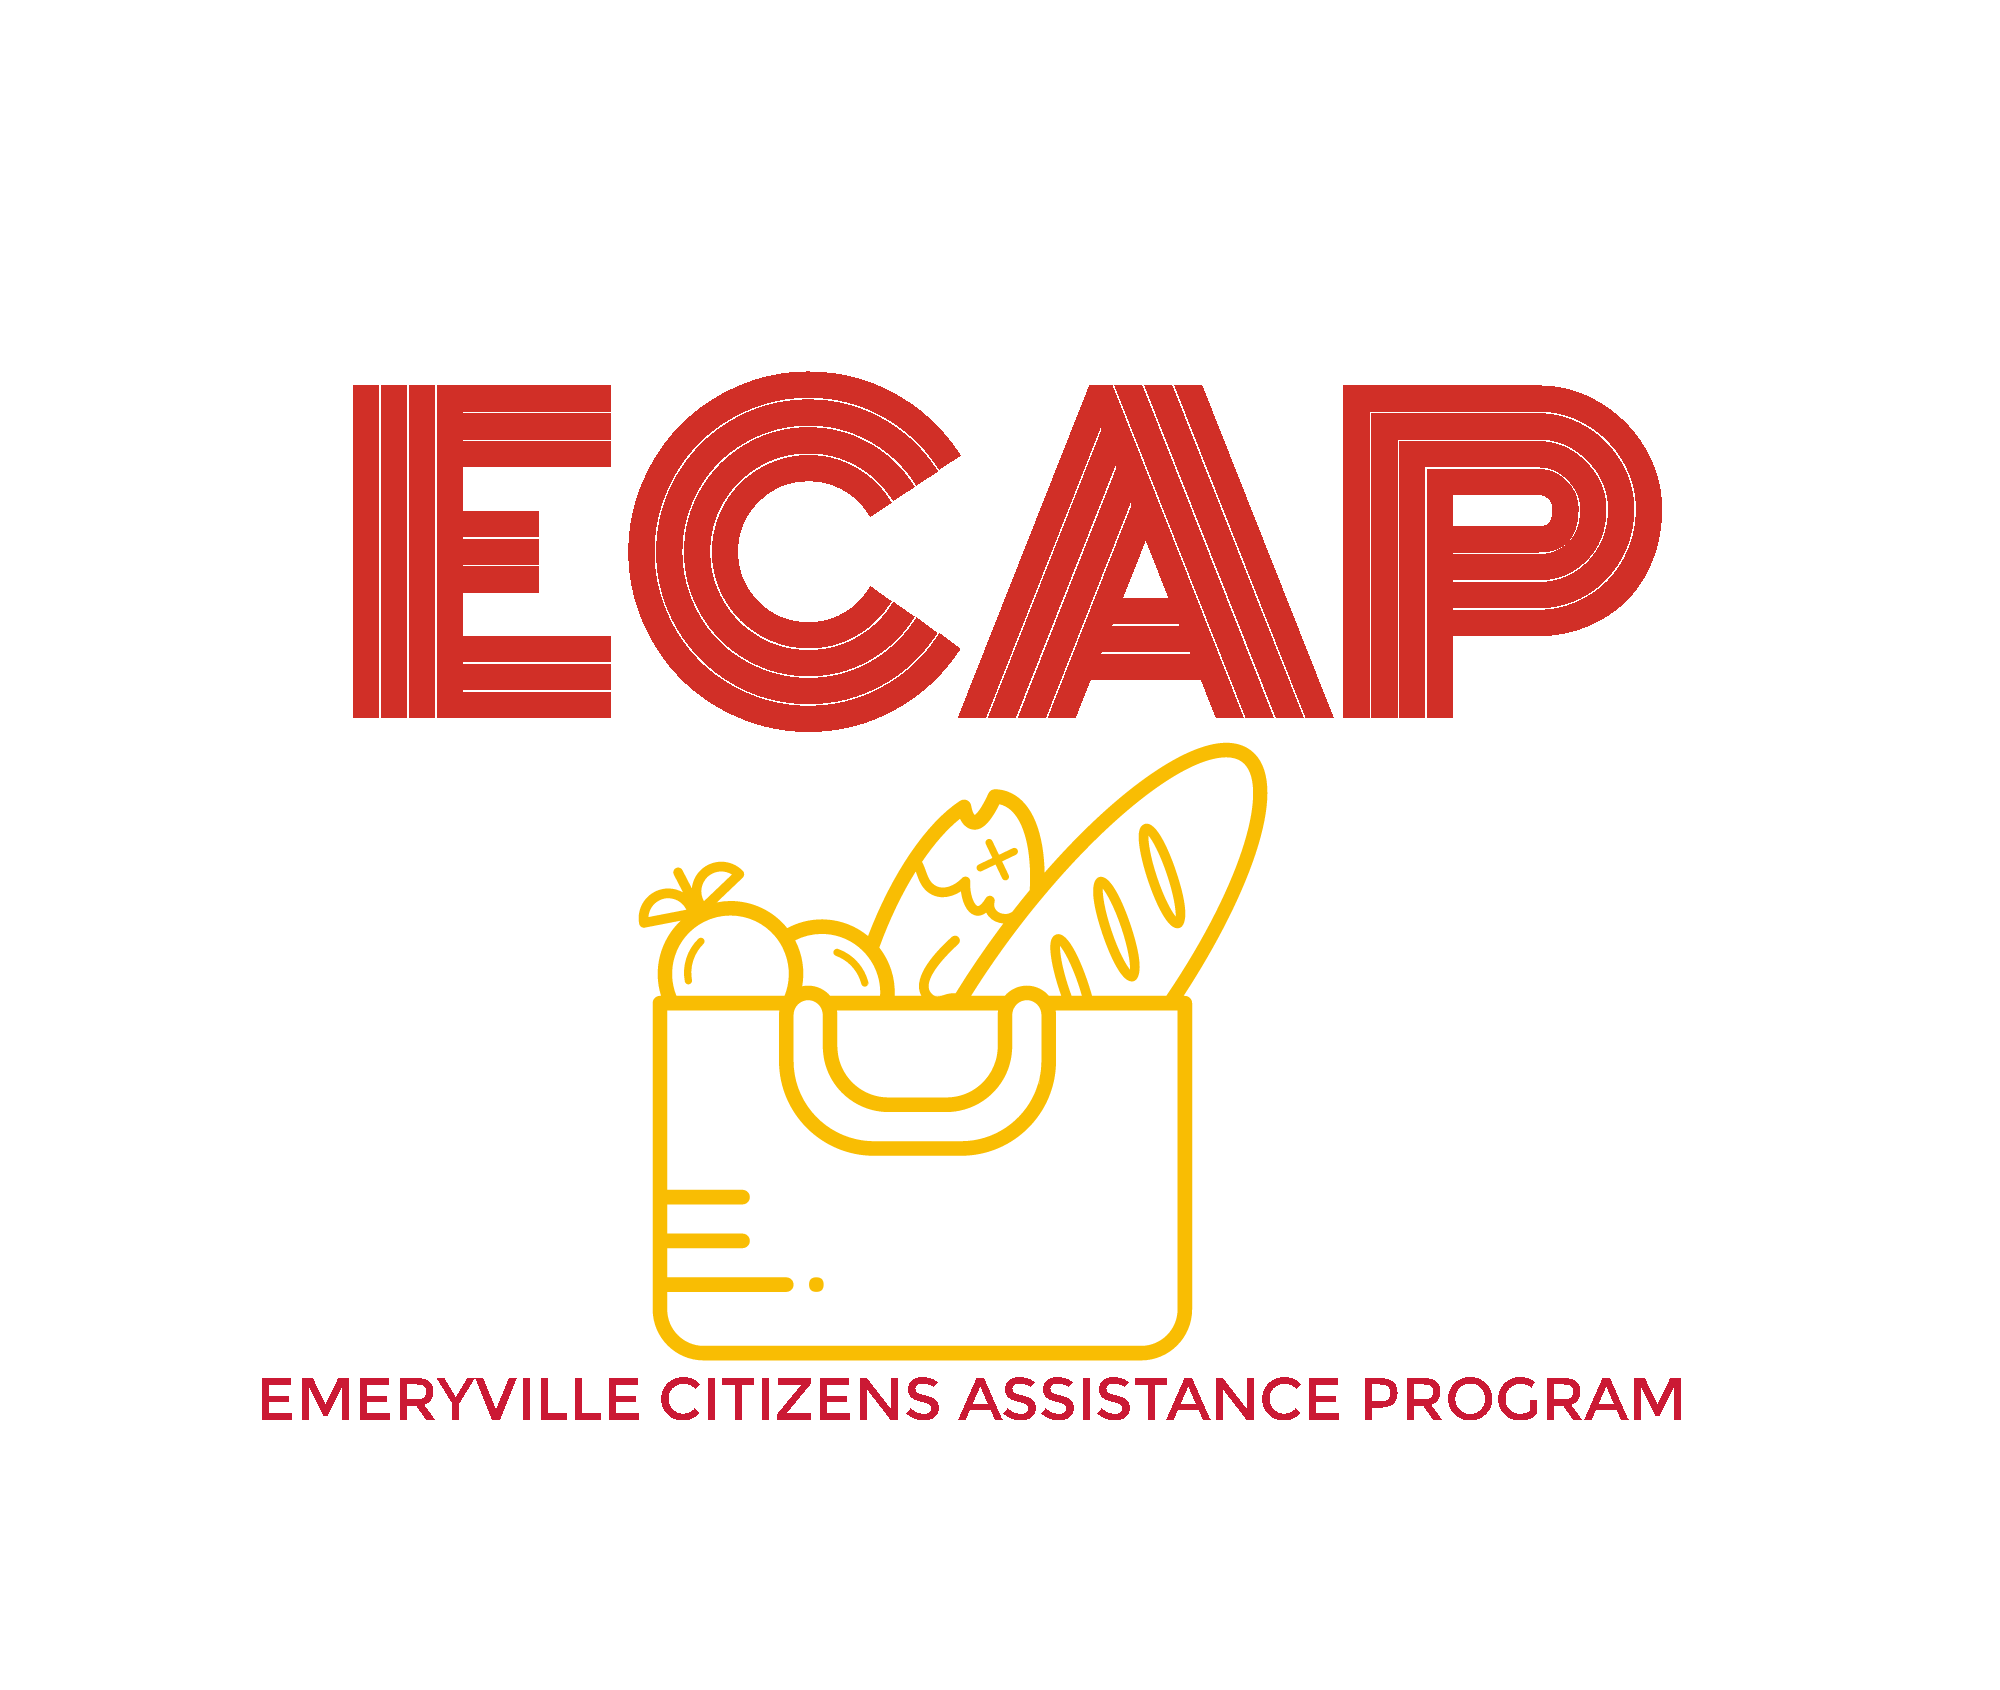 Emeryville Citizens Assistance Program - ECAP